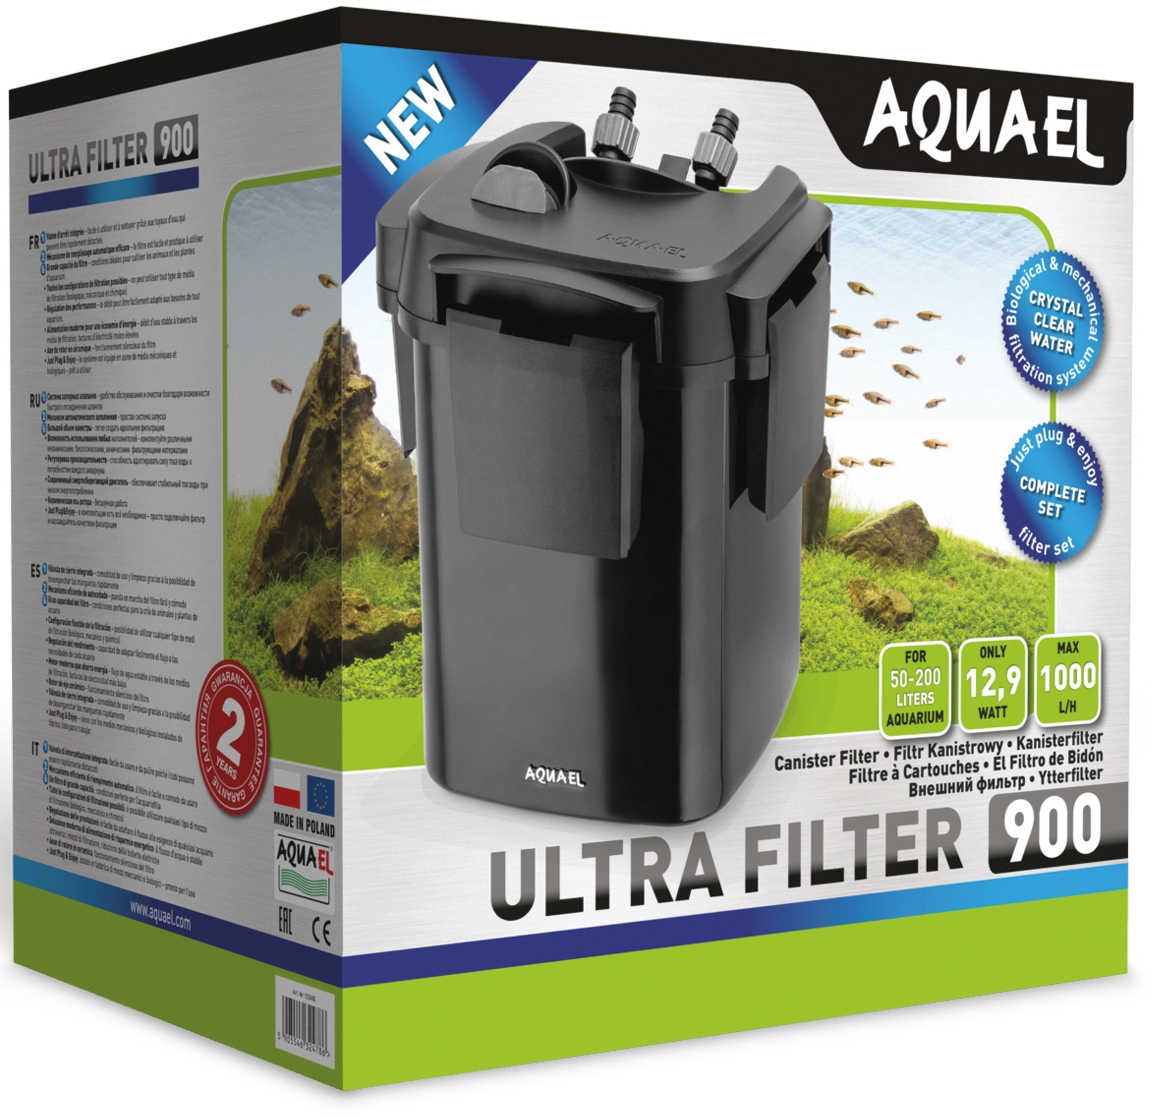 ULTRA 900 Filter